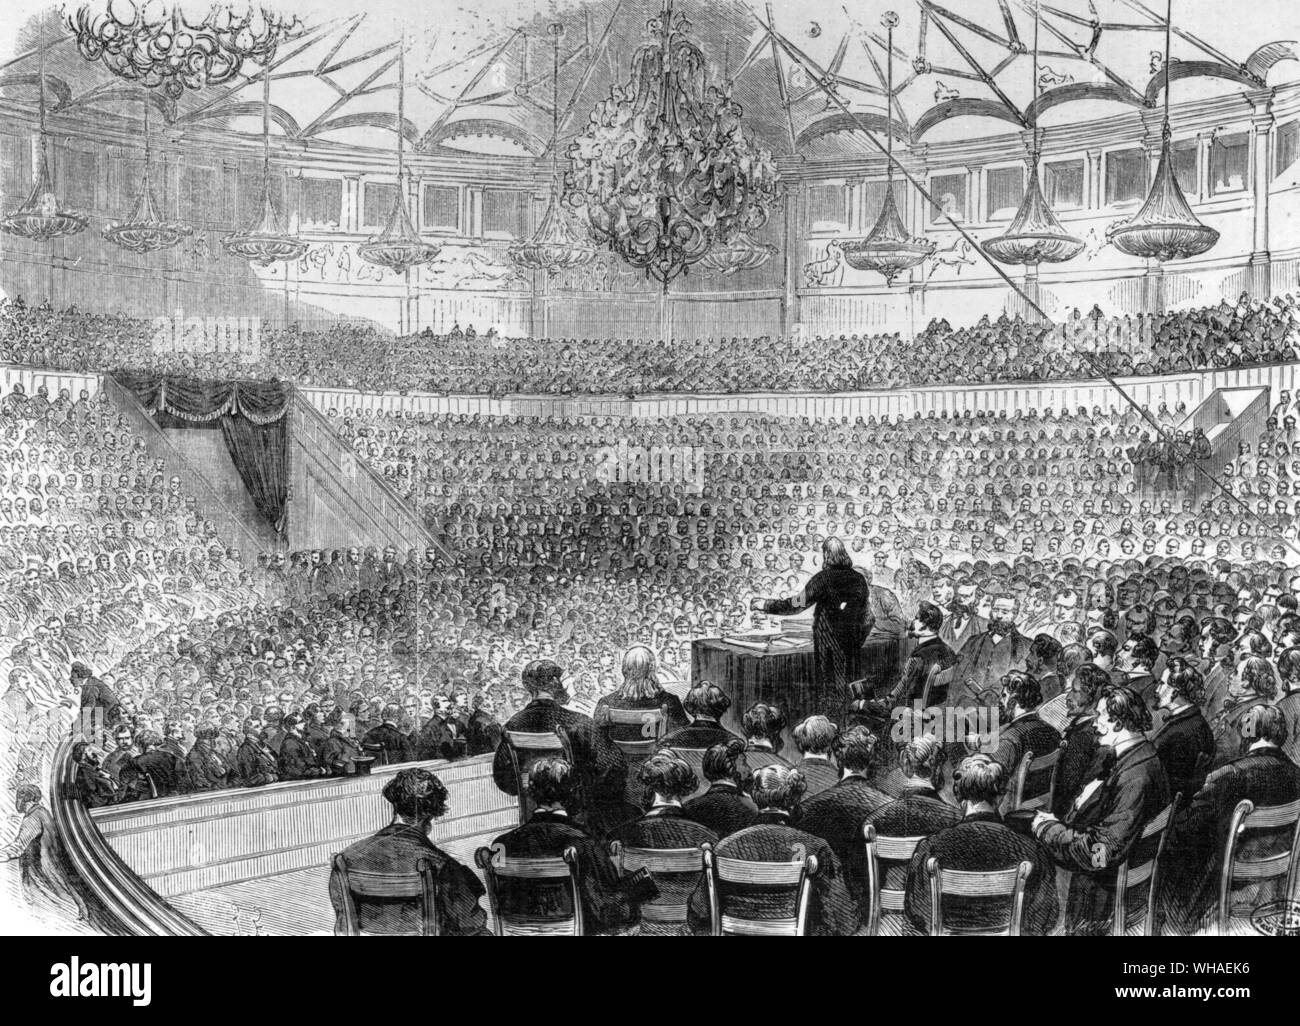 La réunion annuelle de la société de l'Union Européenne de Commerce au Cirque Napoléon. Février 1869 Banque D'Images